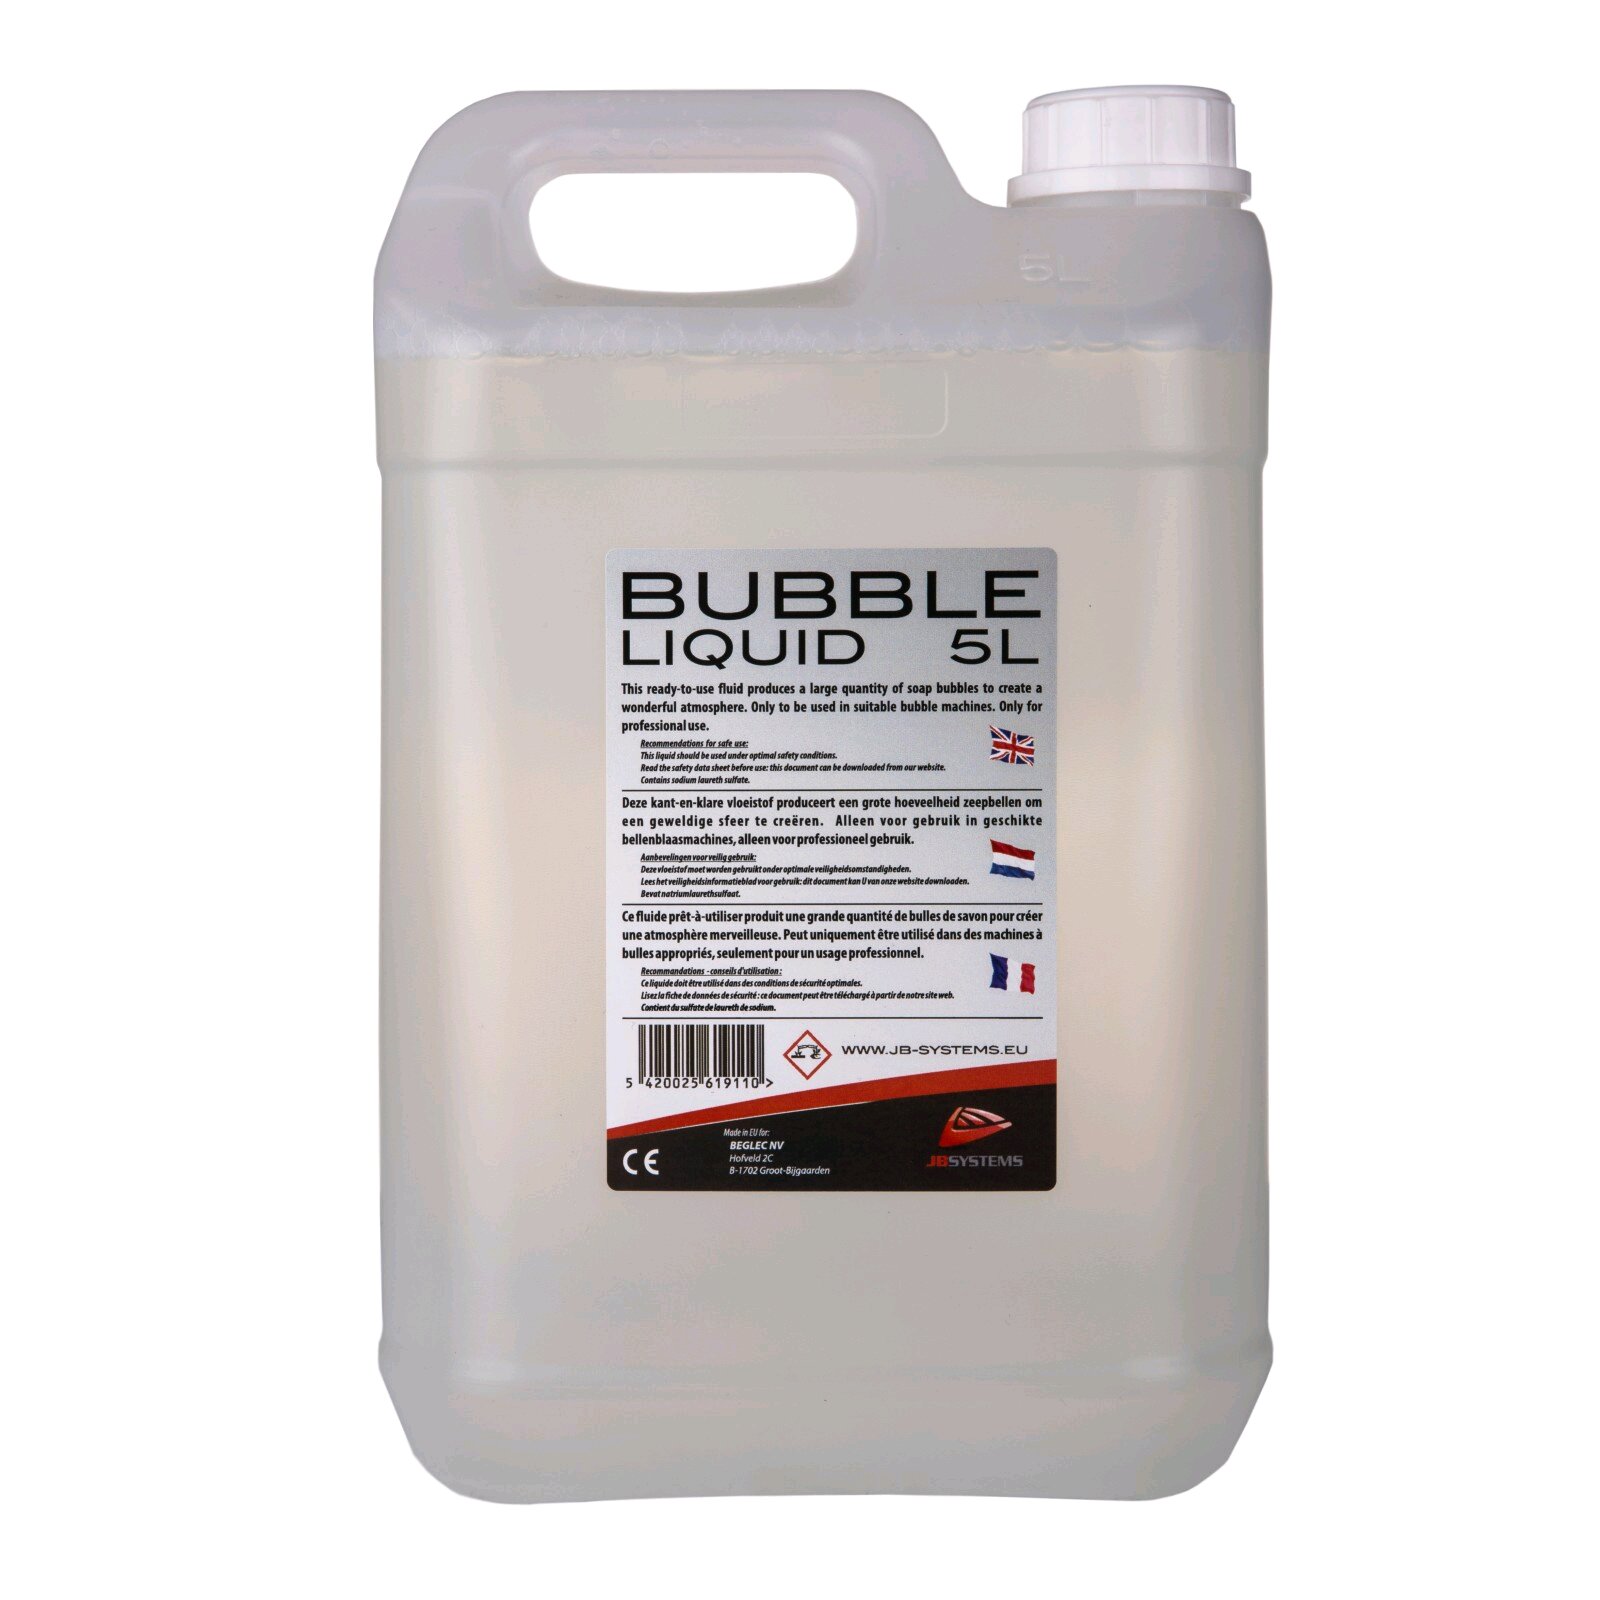 JBSYSTEMS BUBBLE LIQUID 5L - 5L liquide à bulles : photo 1